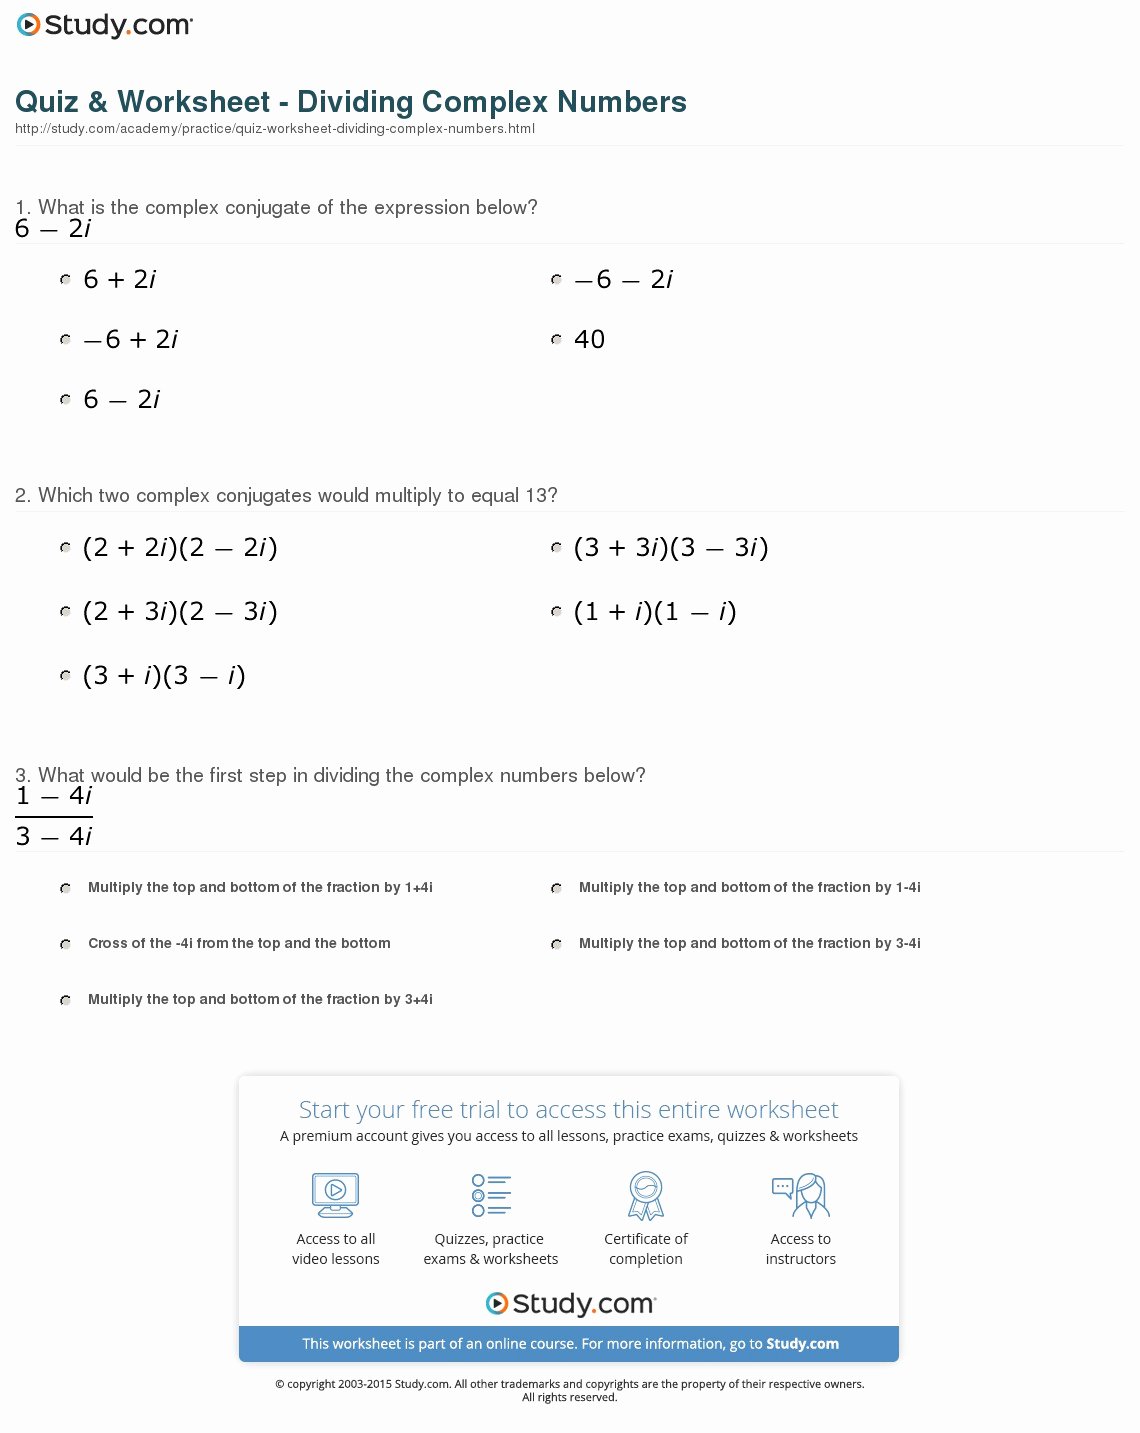 Multiplying Complex Numbers Worksheet Fresh Quiz &amp; Worksheet Dividing Plex Numbers